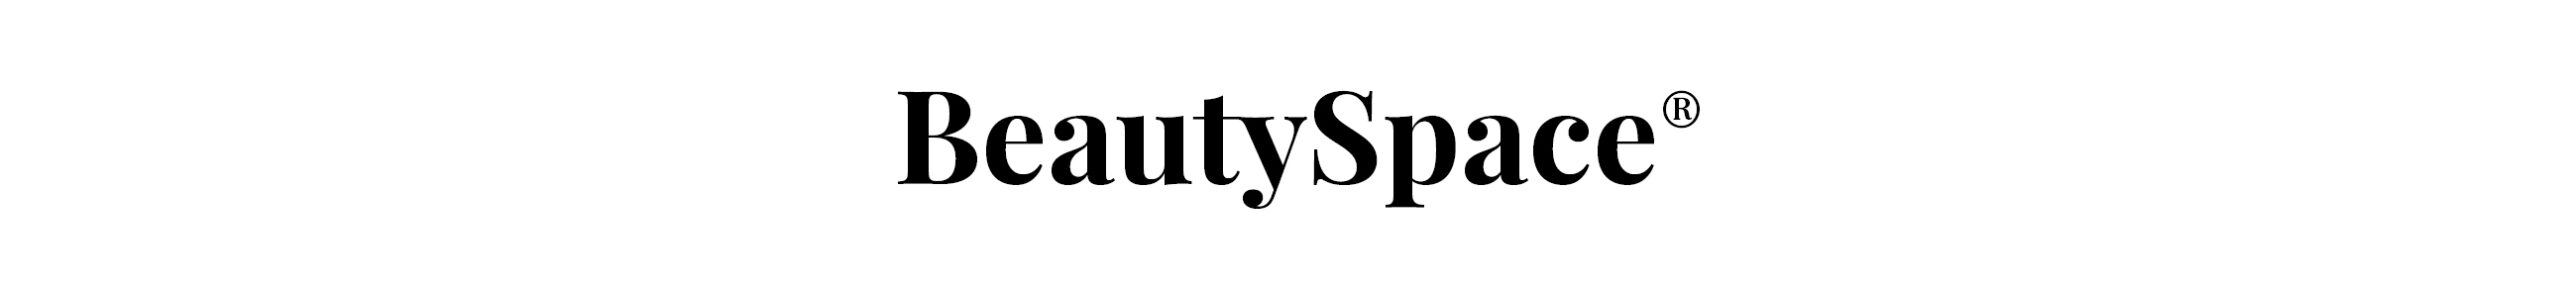 Beautyspace Logo